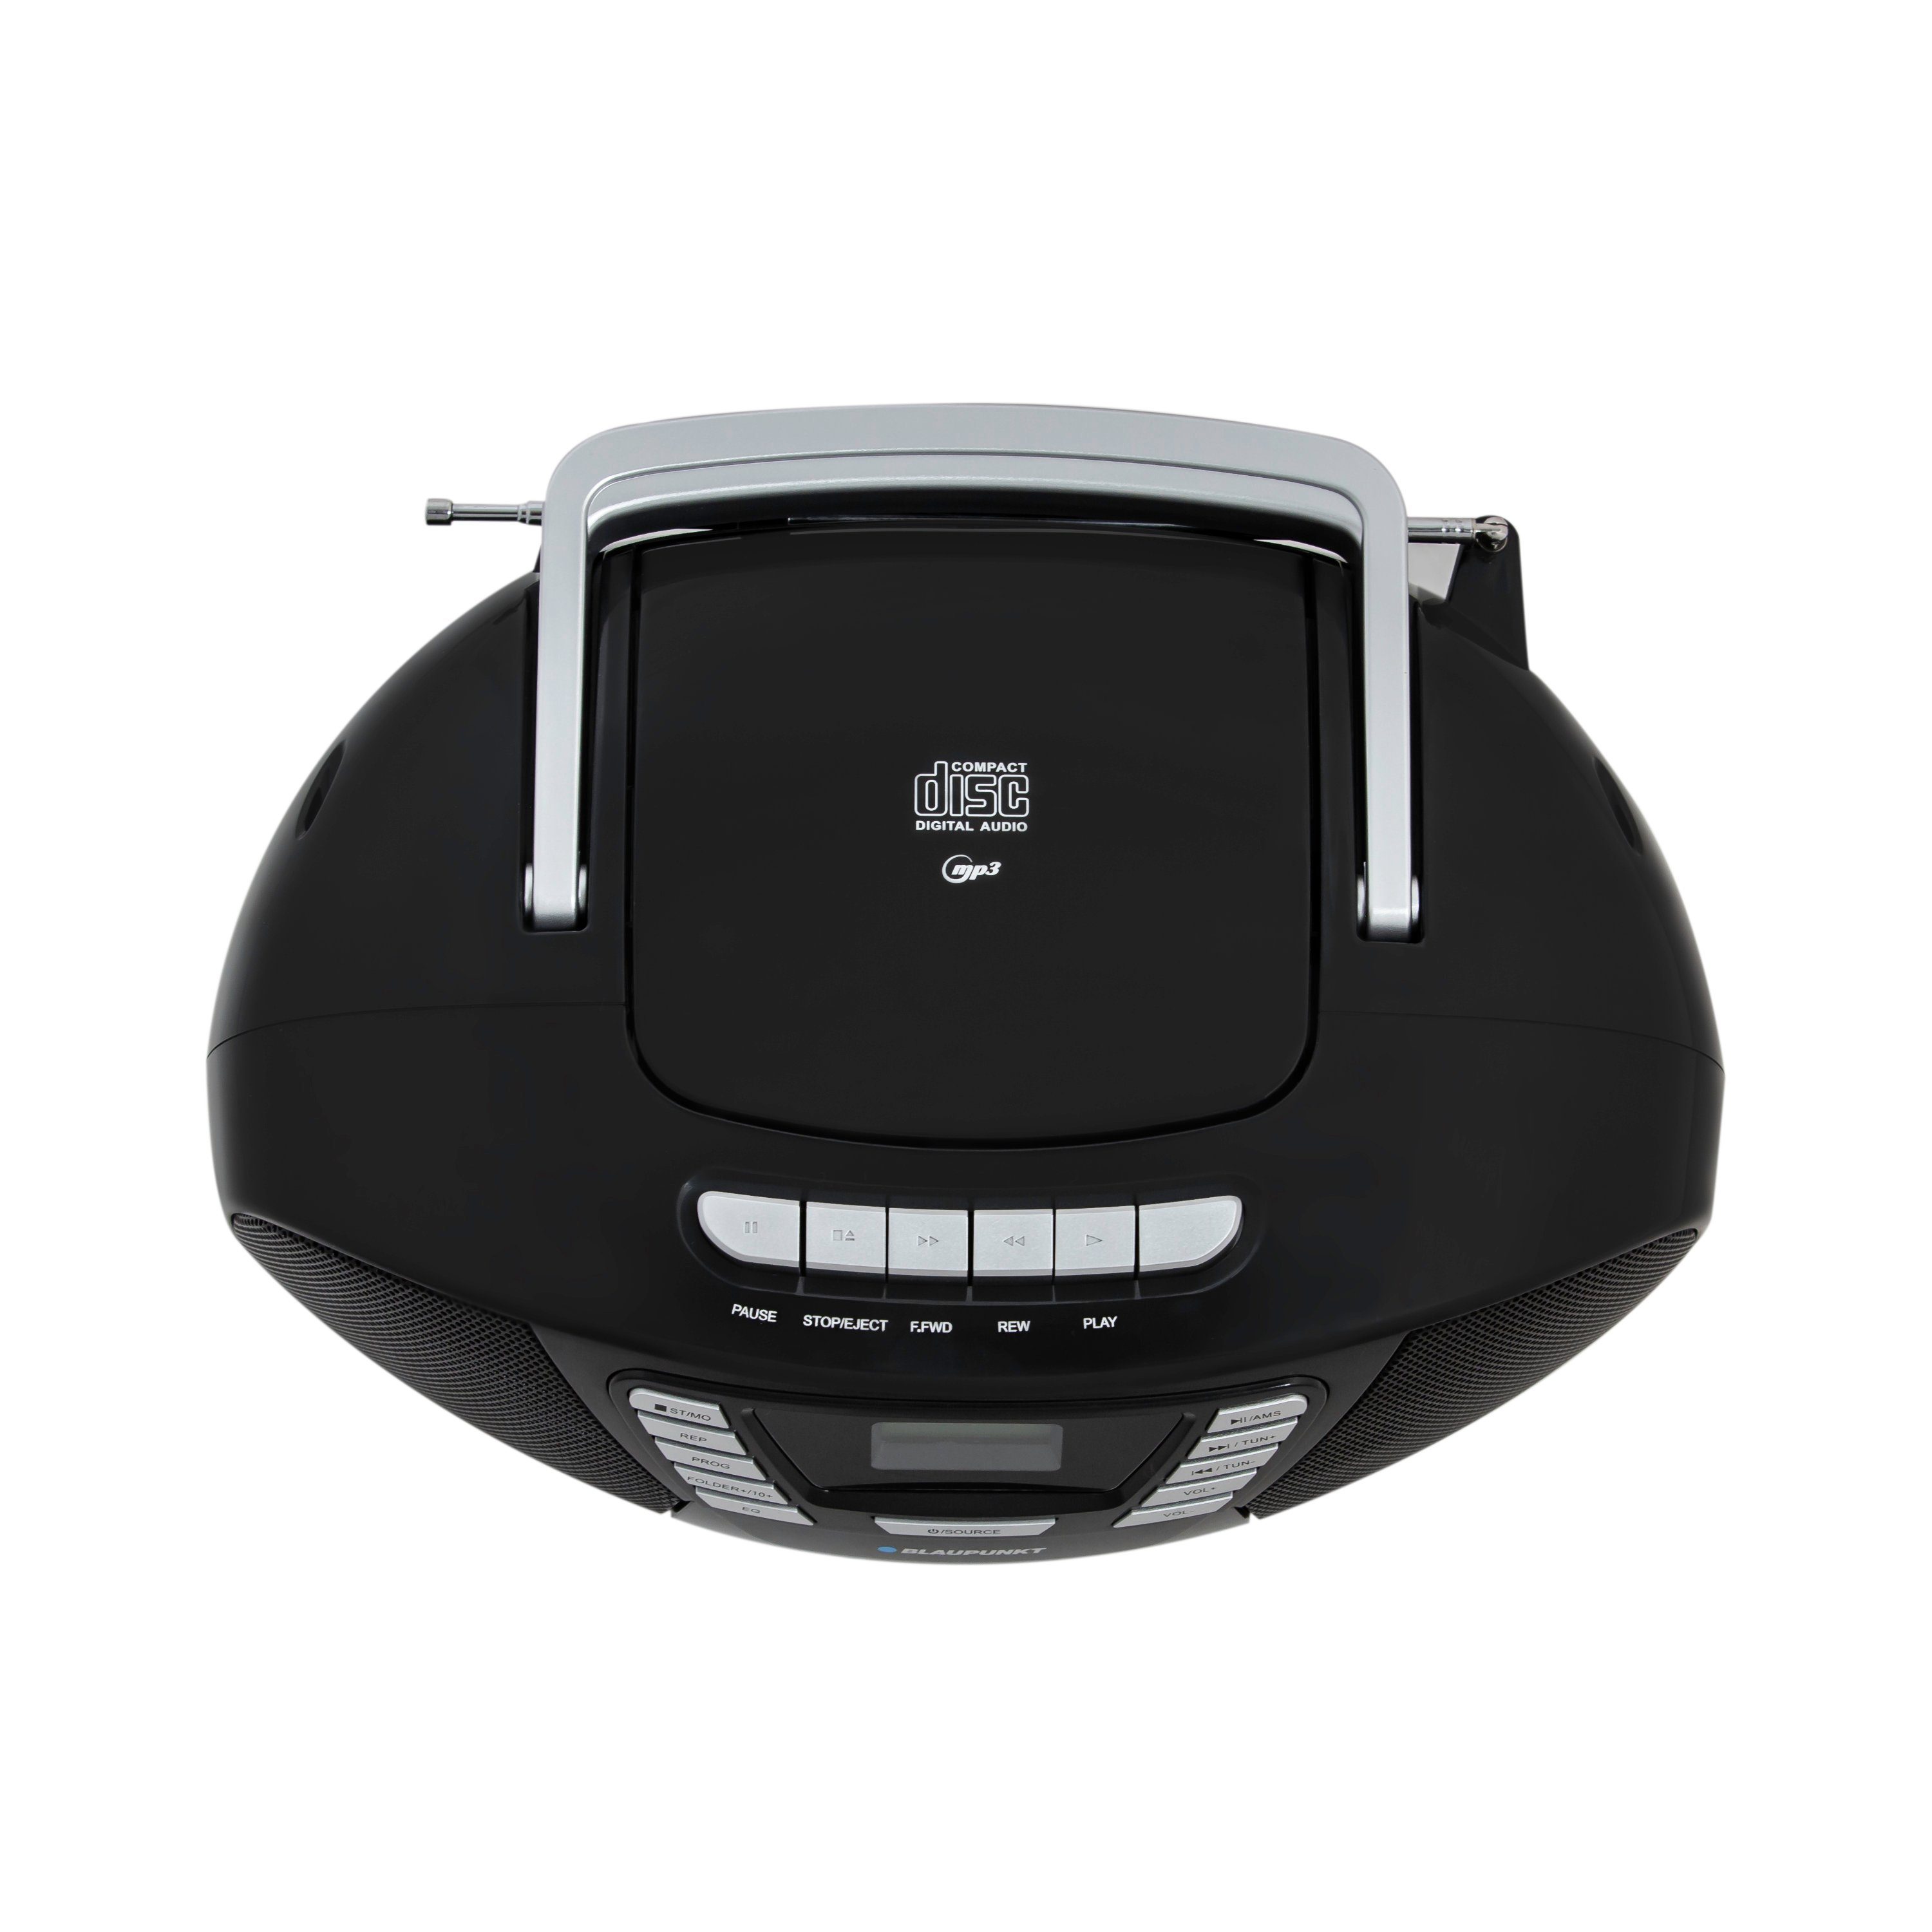 Blaupunkt B 120 und (UKW, Kassetten W, Bluetooth, CD-Player, Radio) USB, FM, Hörbuchfunktion, 6,00 Schwarz Boombox